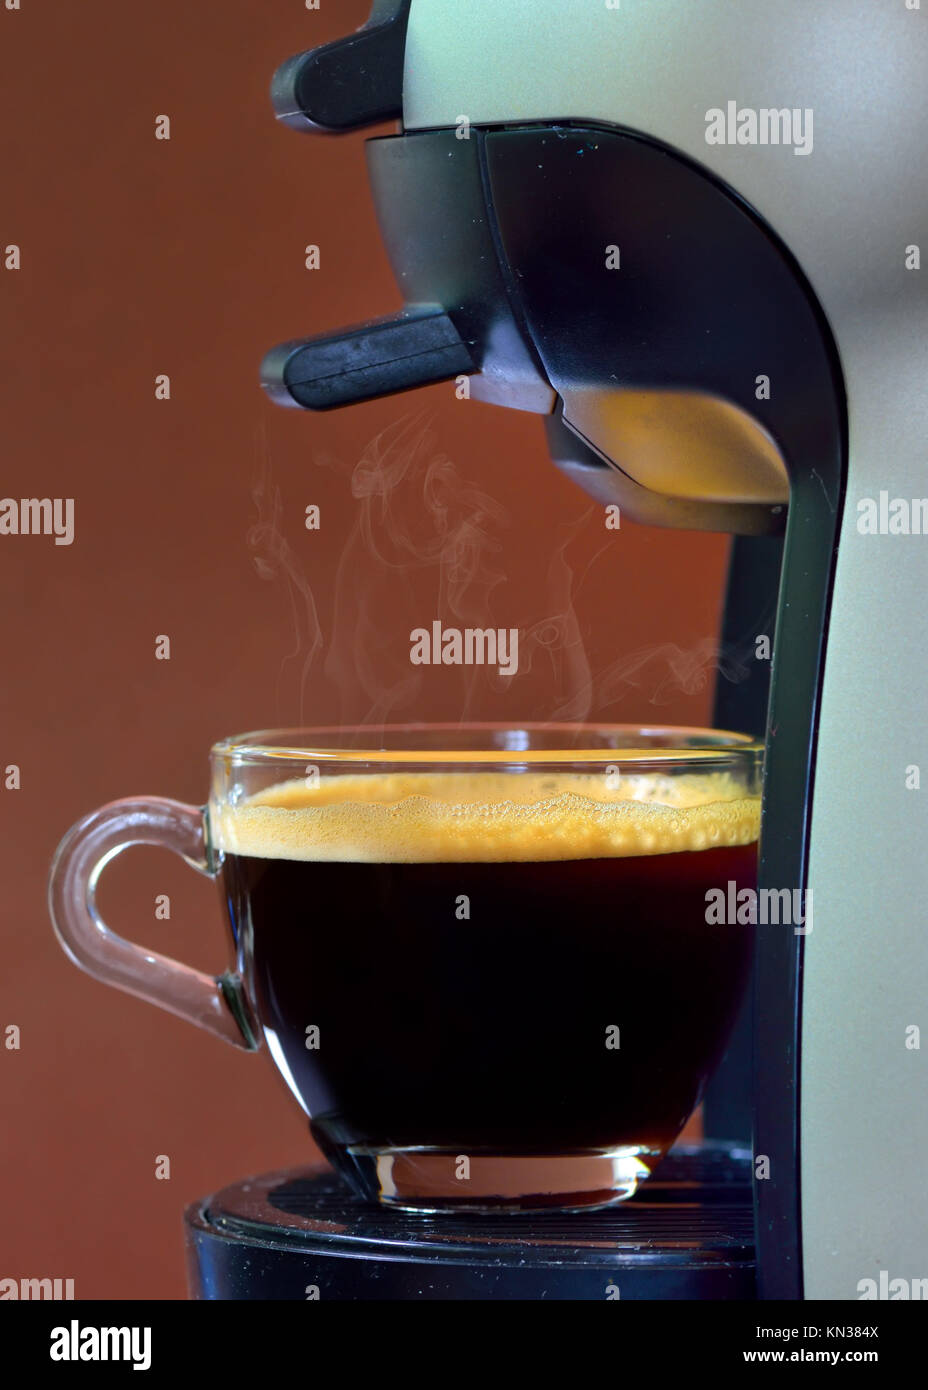 https://c8.alamy.com/comp/KN384X/espresso-pouring-into-a-cup-KN384X.jpg